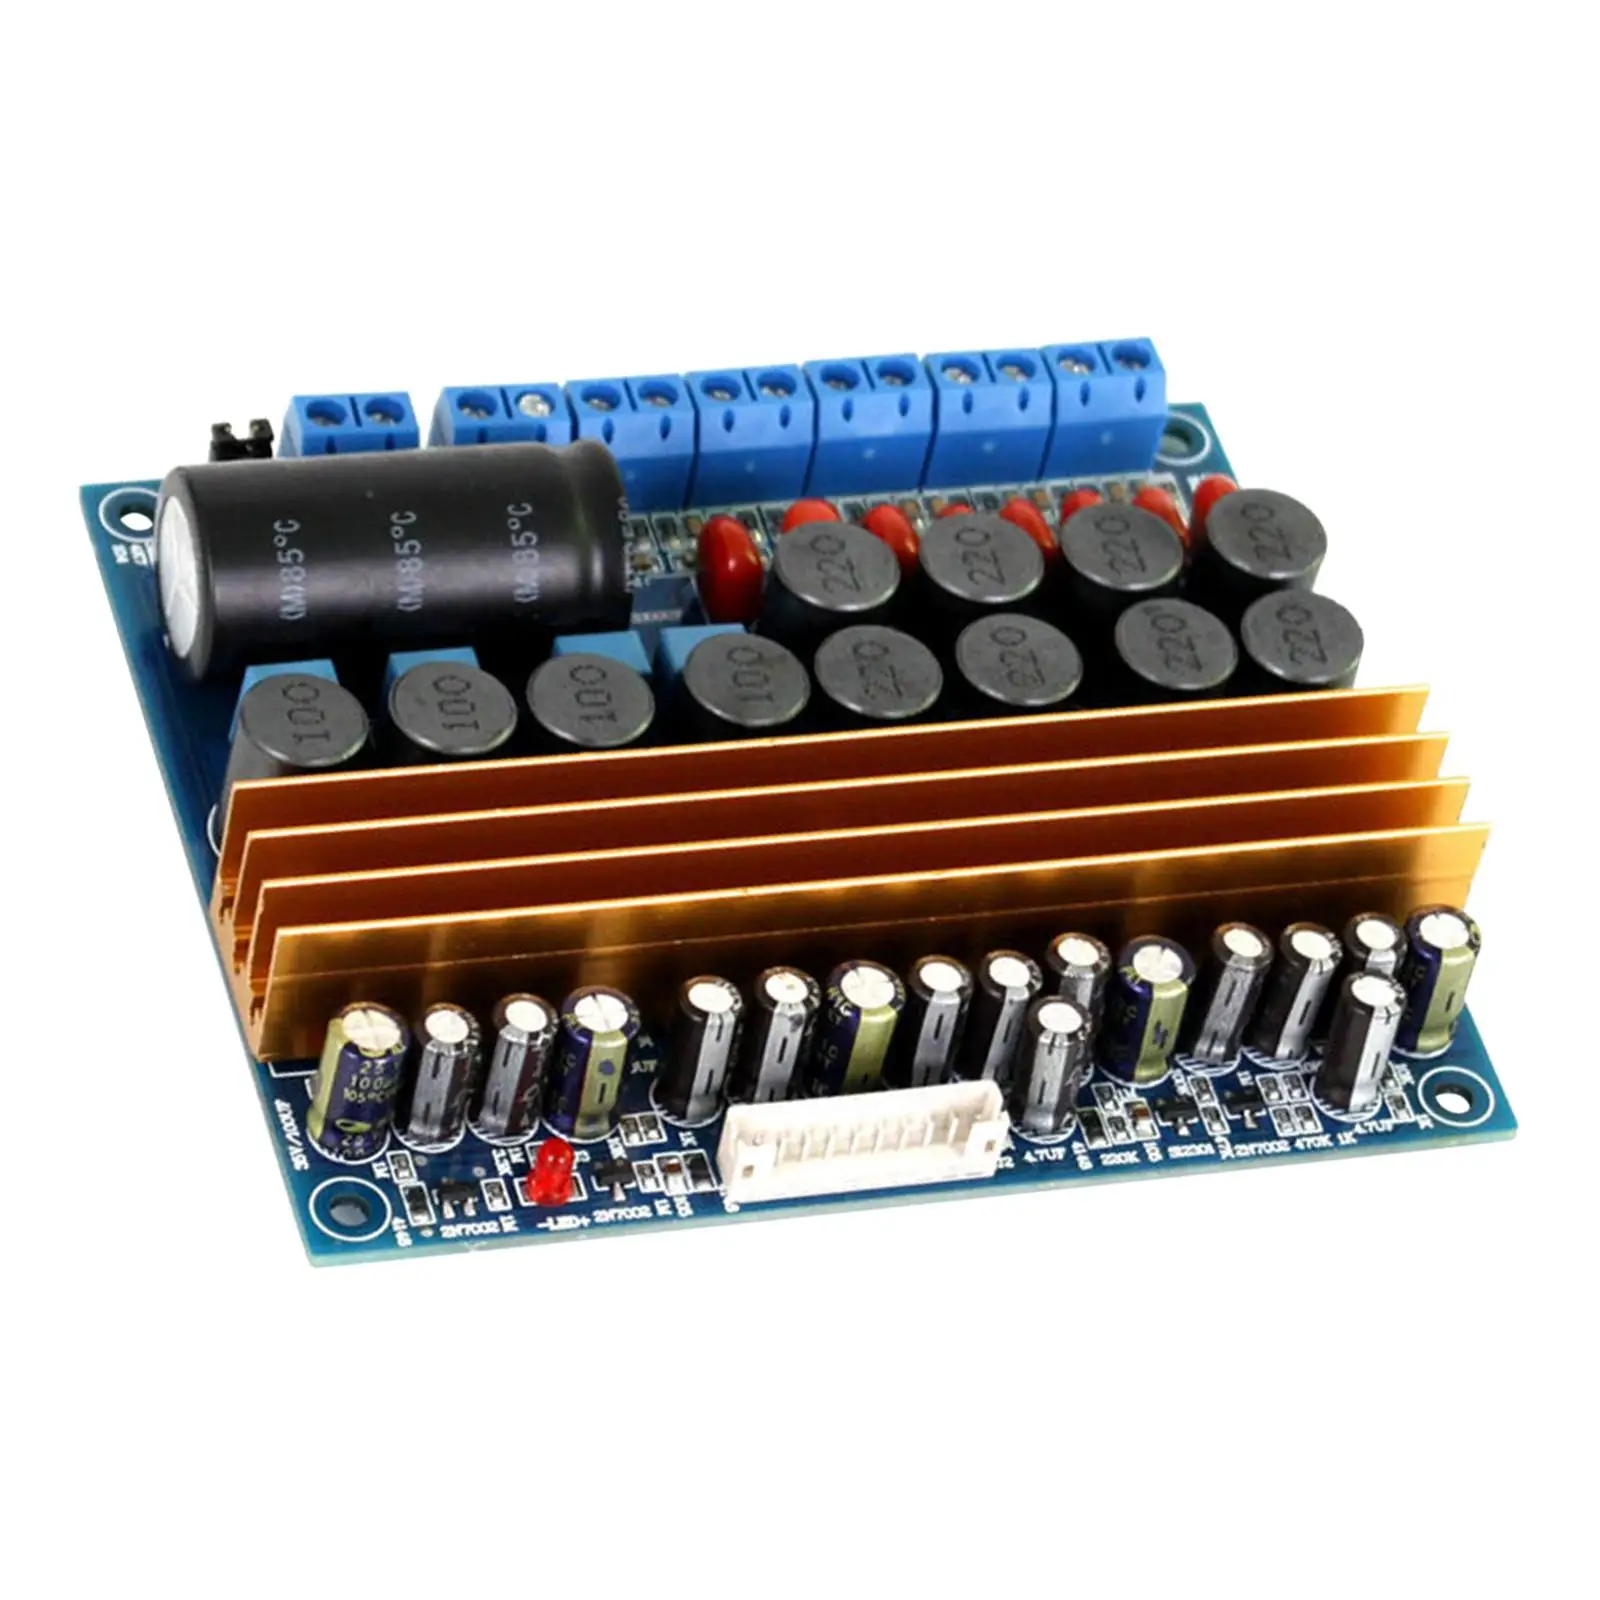 TPA3116 Digital Power Amplifier Board, DC18-24V 100W+100W+4x50W, 5.1 Channel Subwoofer Amplifier Board Amp Module